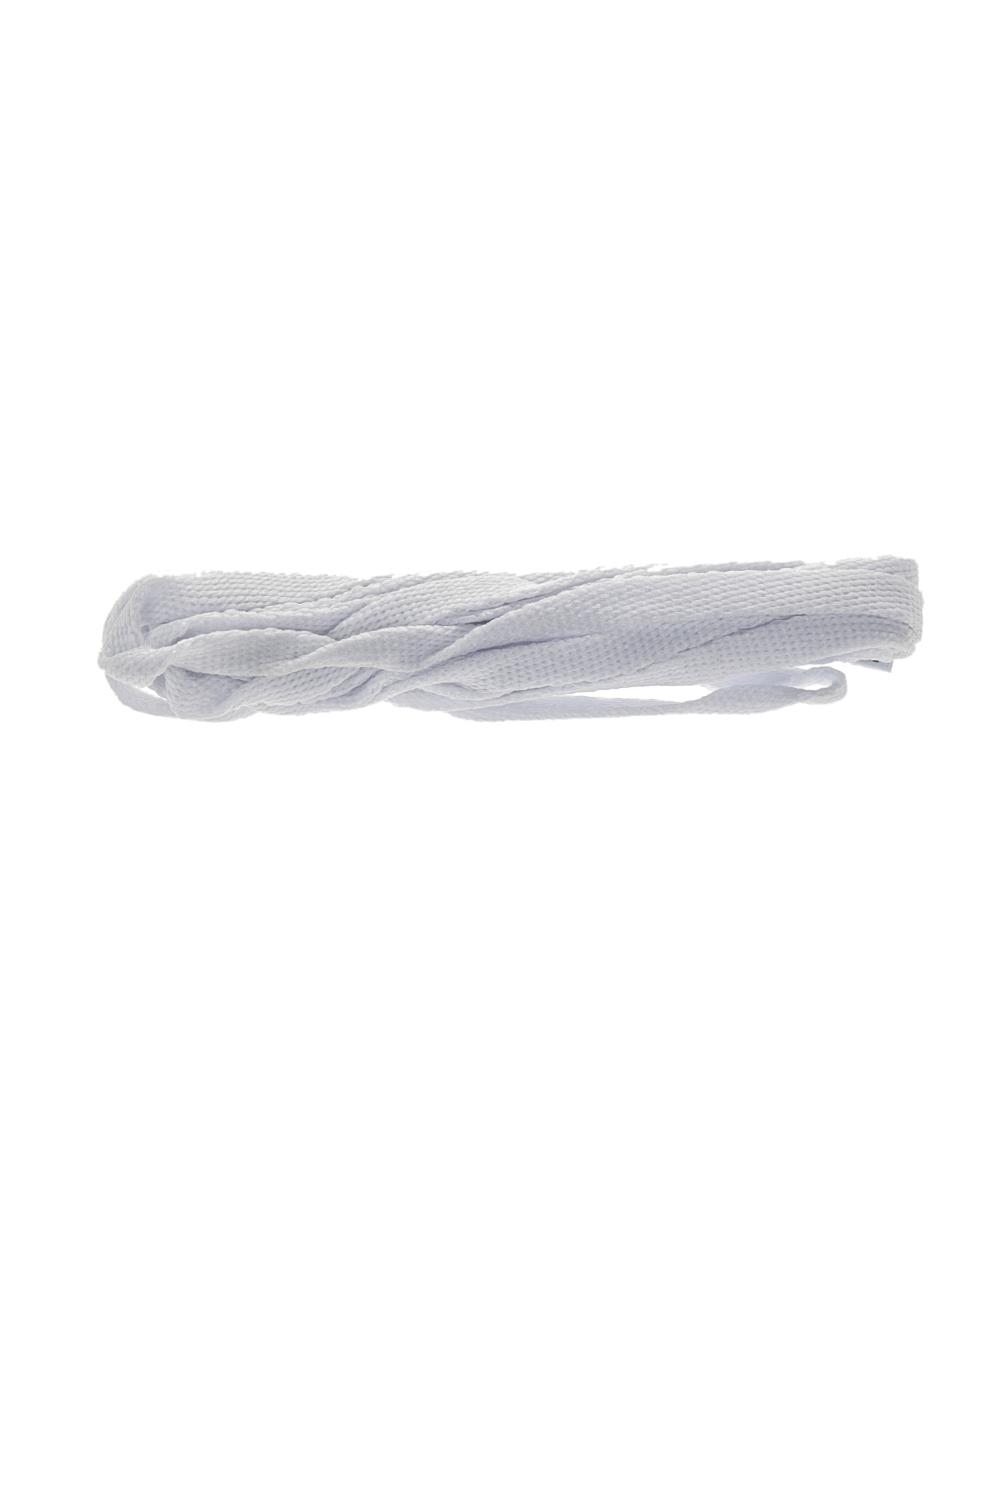 TUBELACES – Unisex κορδόνια TUBELACES WHITE FLAT λευκά 1670412.0-0091